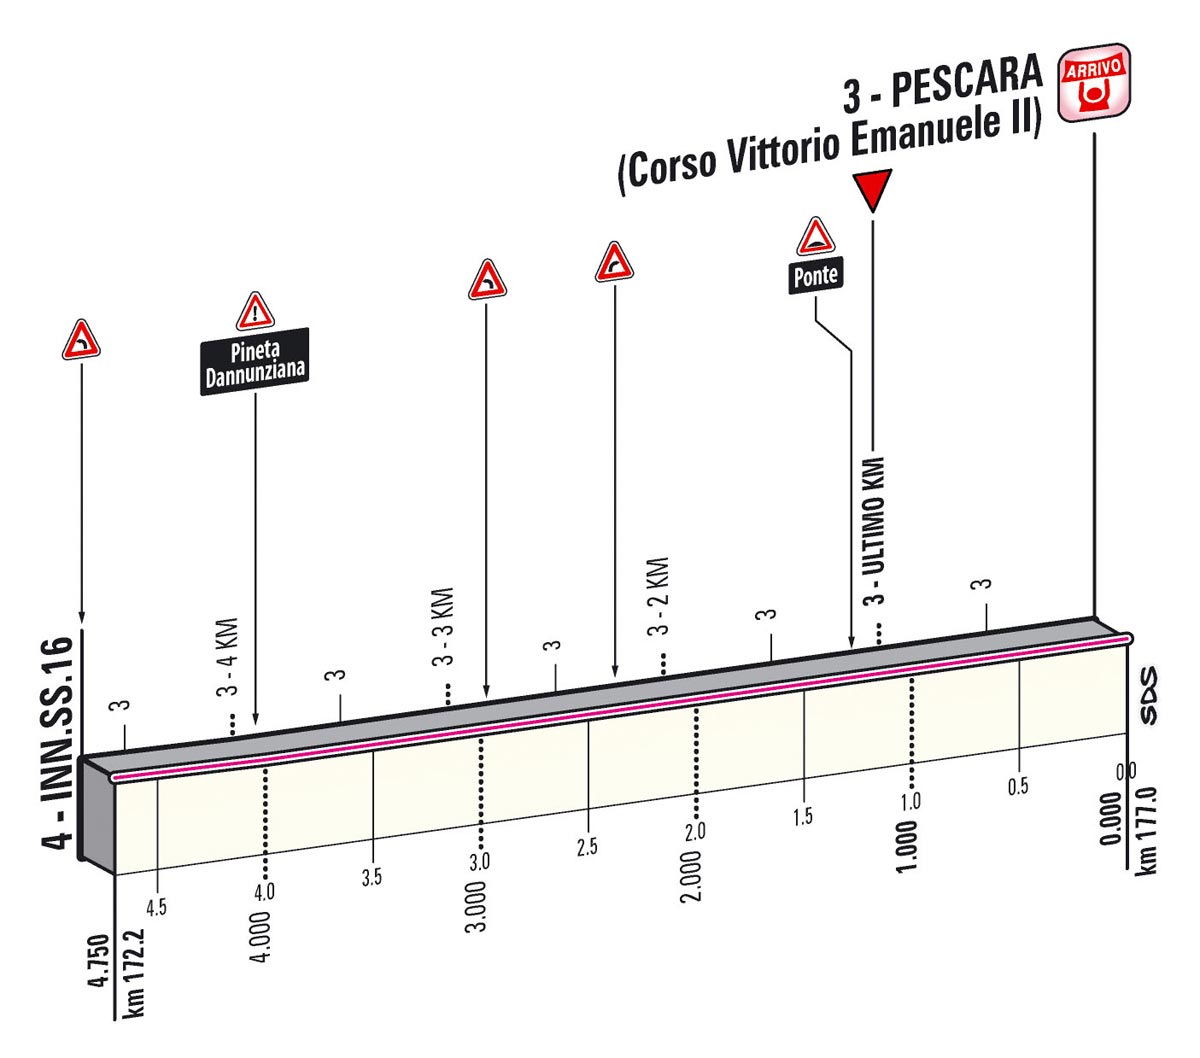 Giro d'Italia 2013 Stage 7 last kms